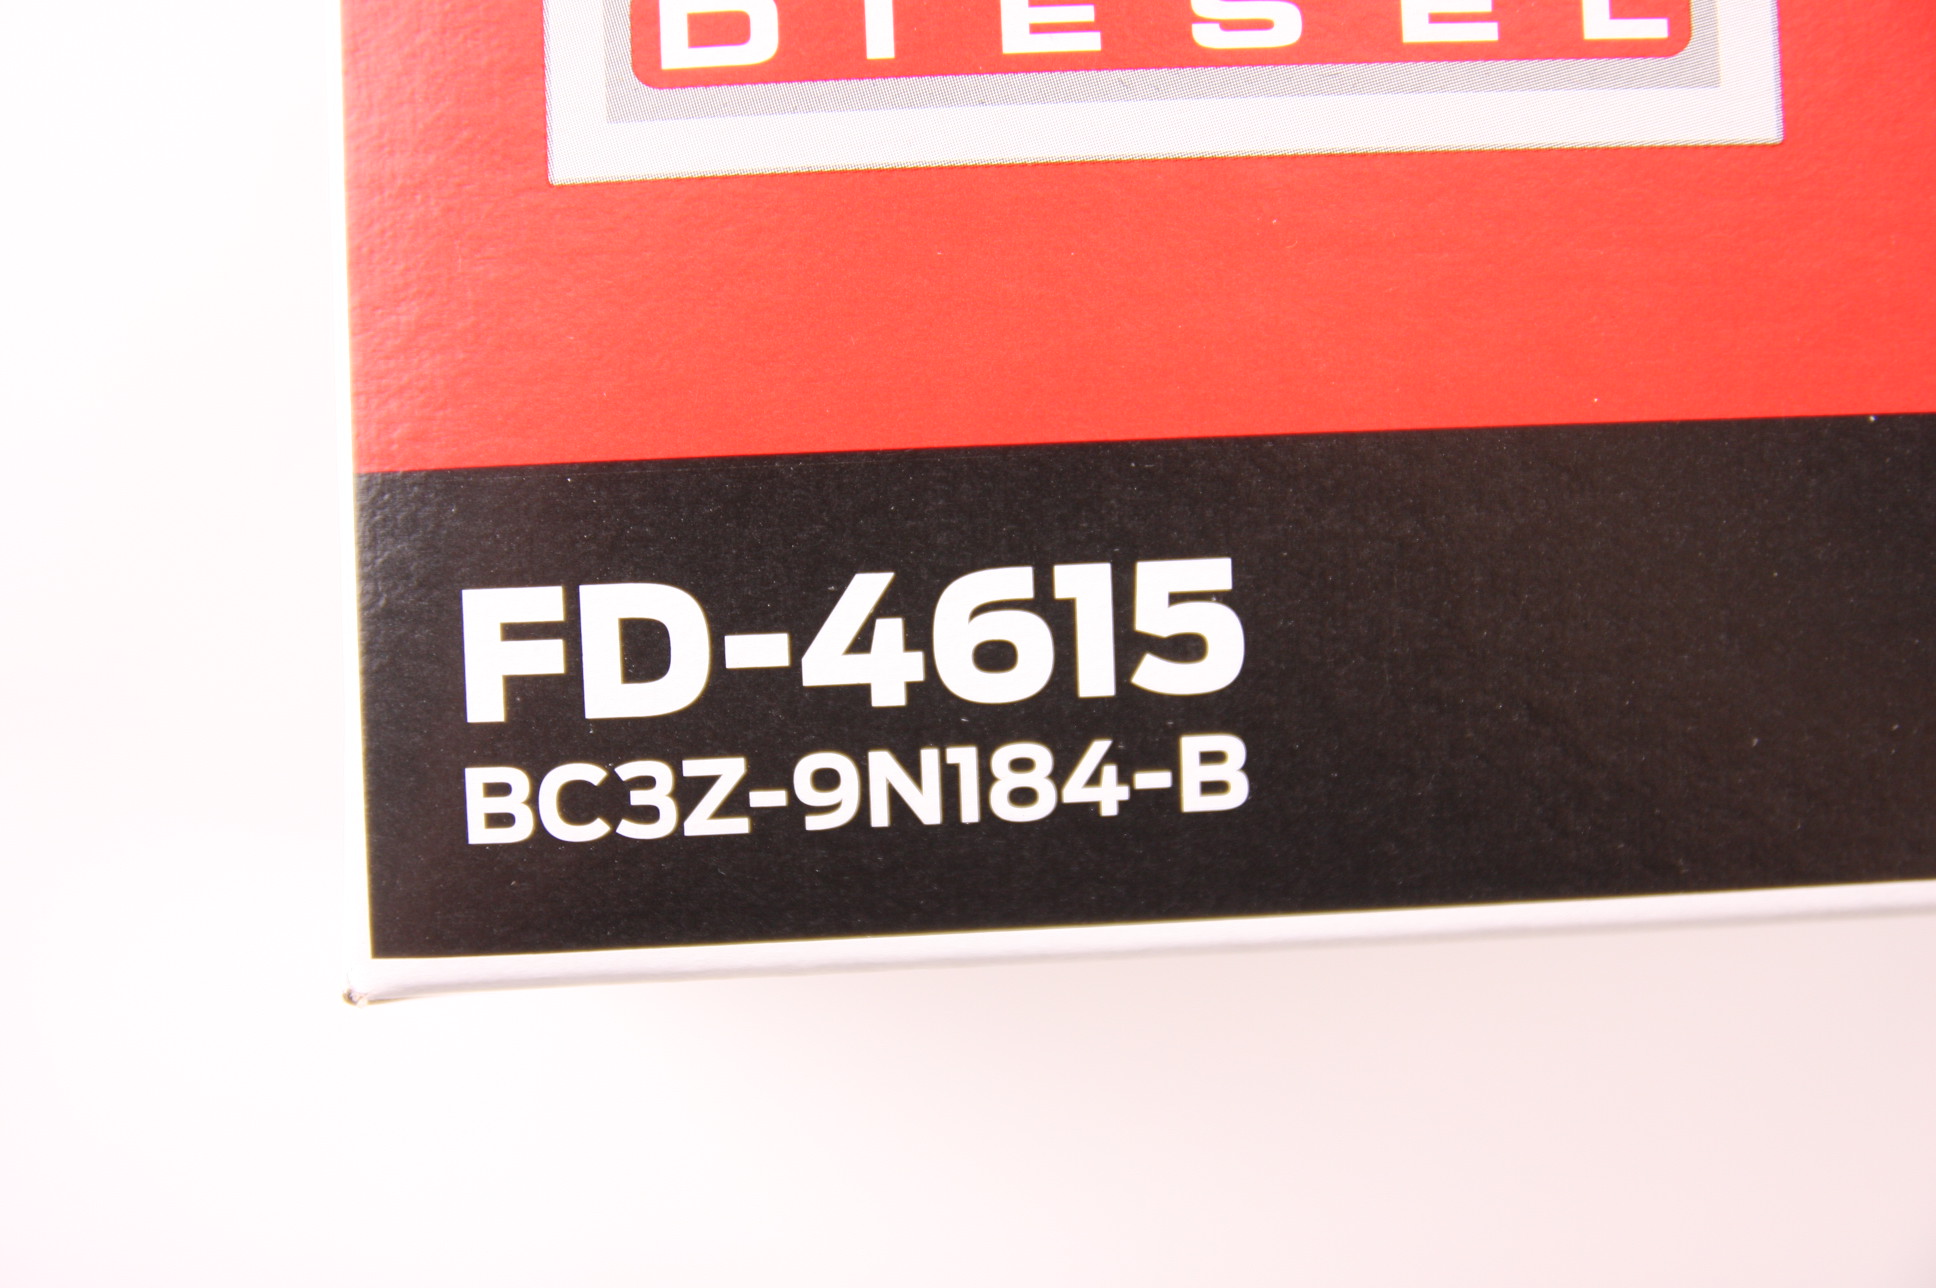 New Ford Motorcraft FD-4615 Fuel Filter 11-13 6.7L DIESEL F250 F350 F450 F550 - image 2